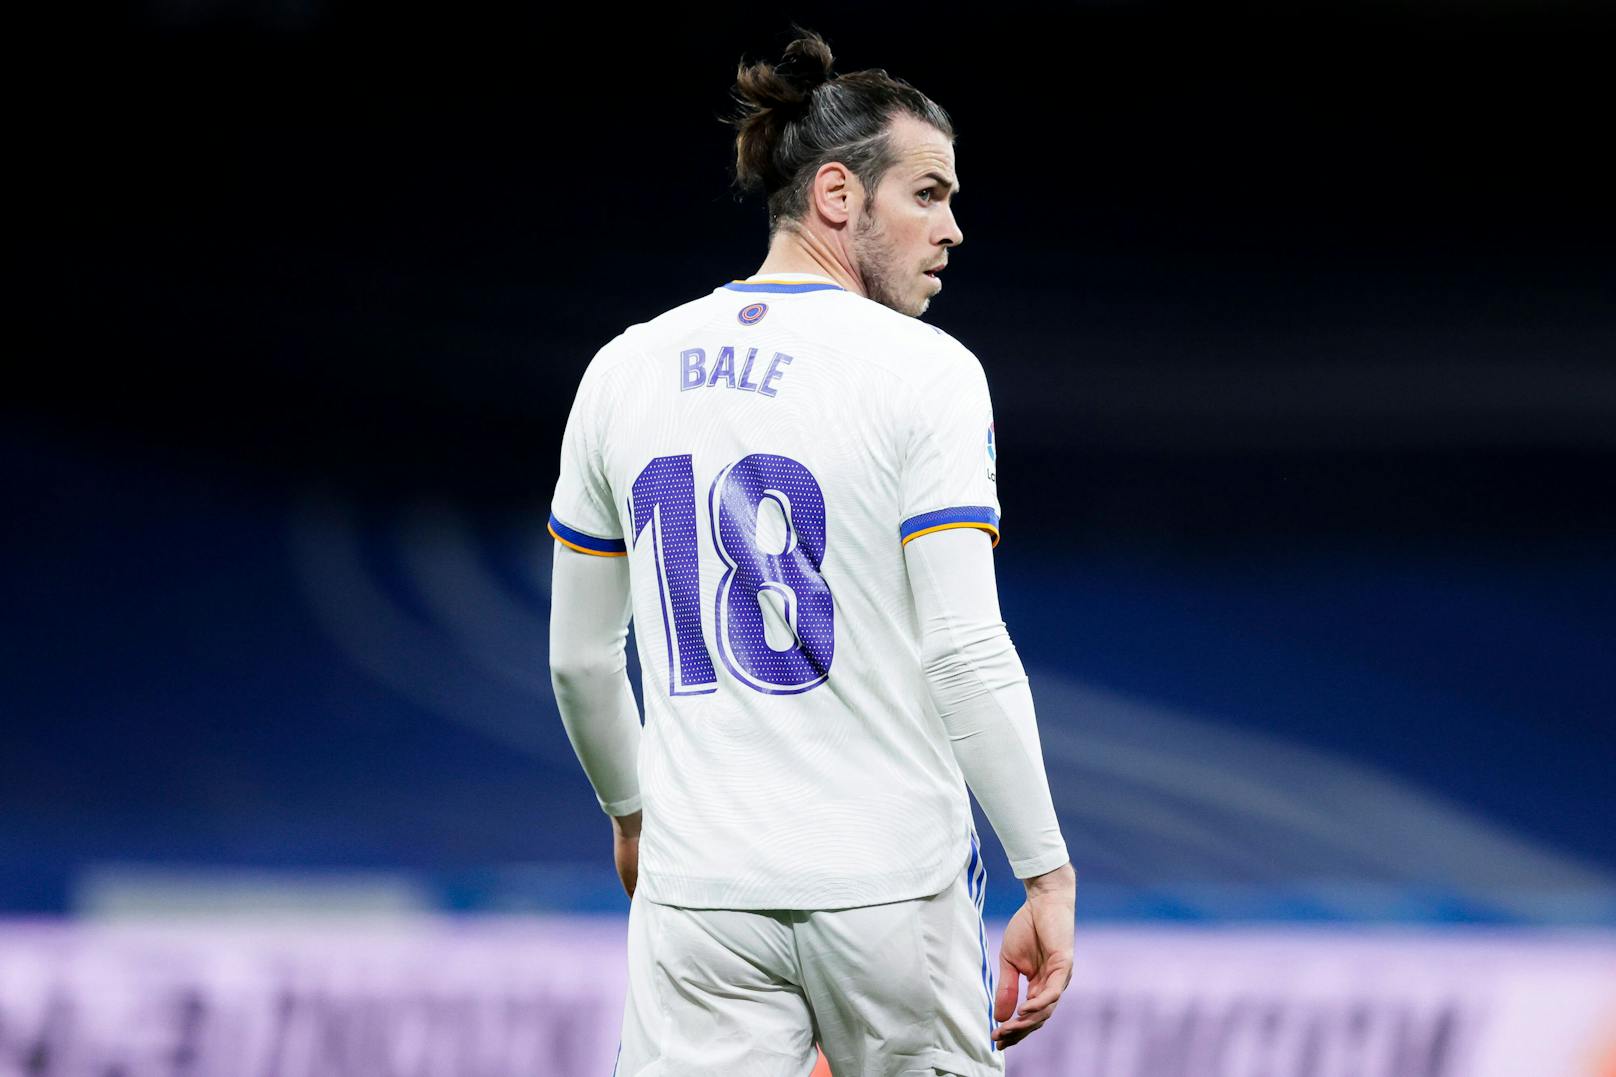 Teamkollege von Fountas? Bale winkt Rekord-Vertrag